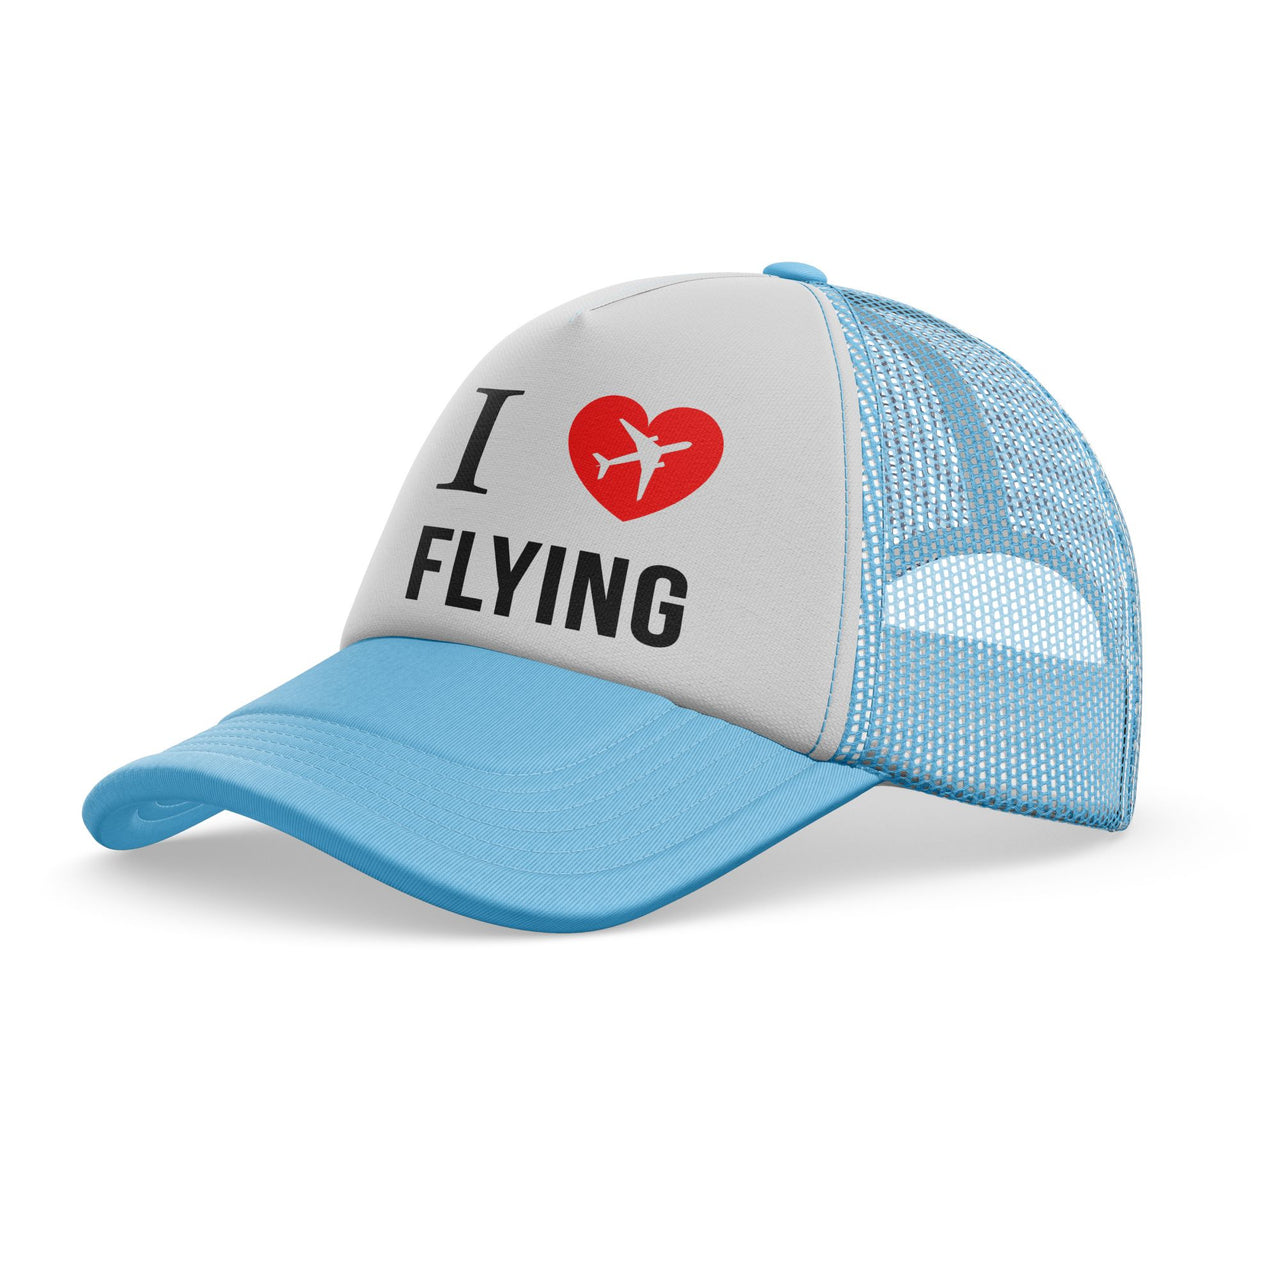 I Love Flying Designed Trucker Caps & Hats